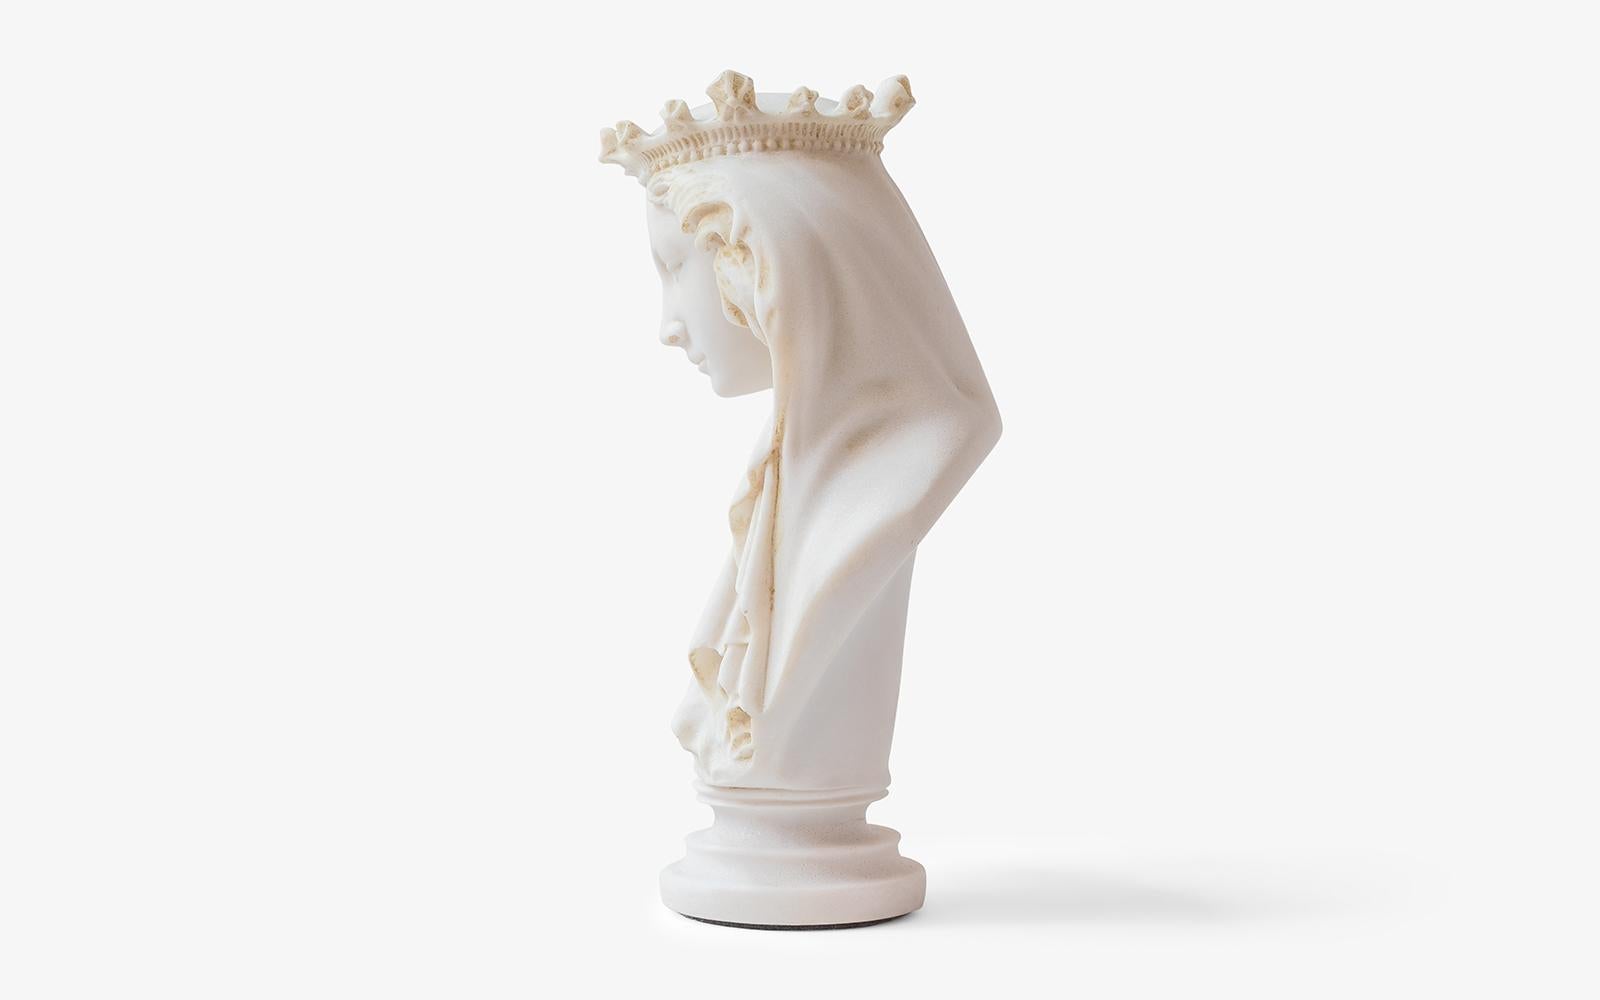 Diese Skulptur stellt die Jungfrau Maria dar, die in der christlichen Mythologie als Mutter von Jesus bekannt ist. Die 1,5 kg schwere Skulptur ist aus gepresstem Marmorpulver und unter Verwendung der Originalformen des Museums hergestellt. Er kann